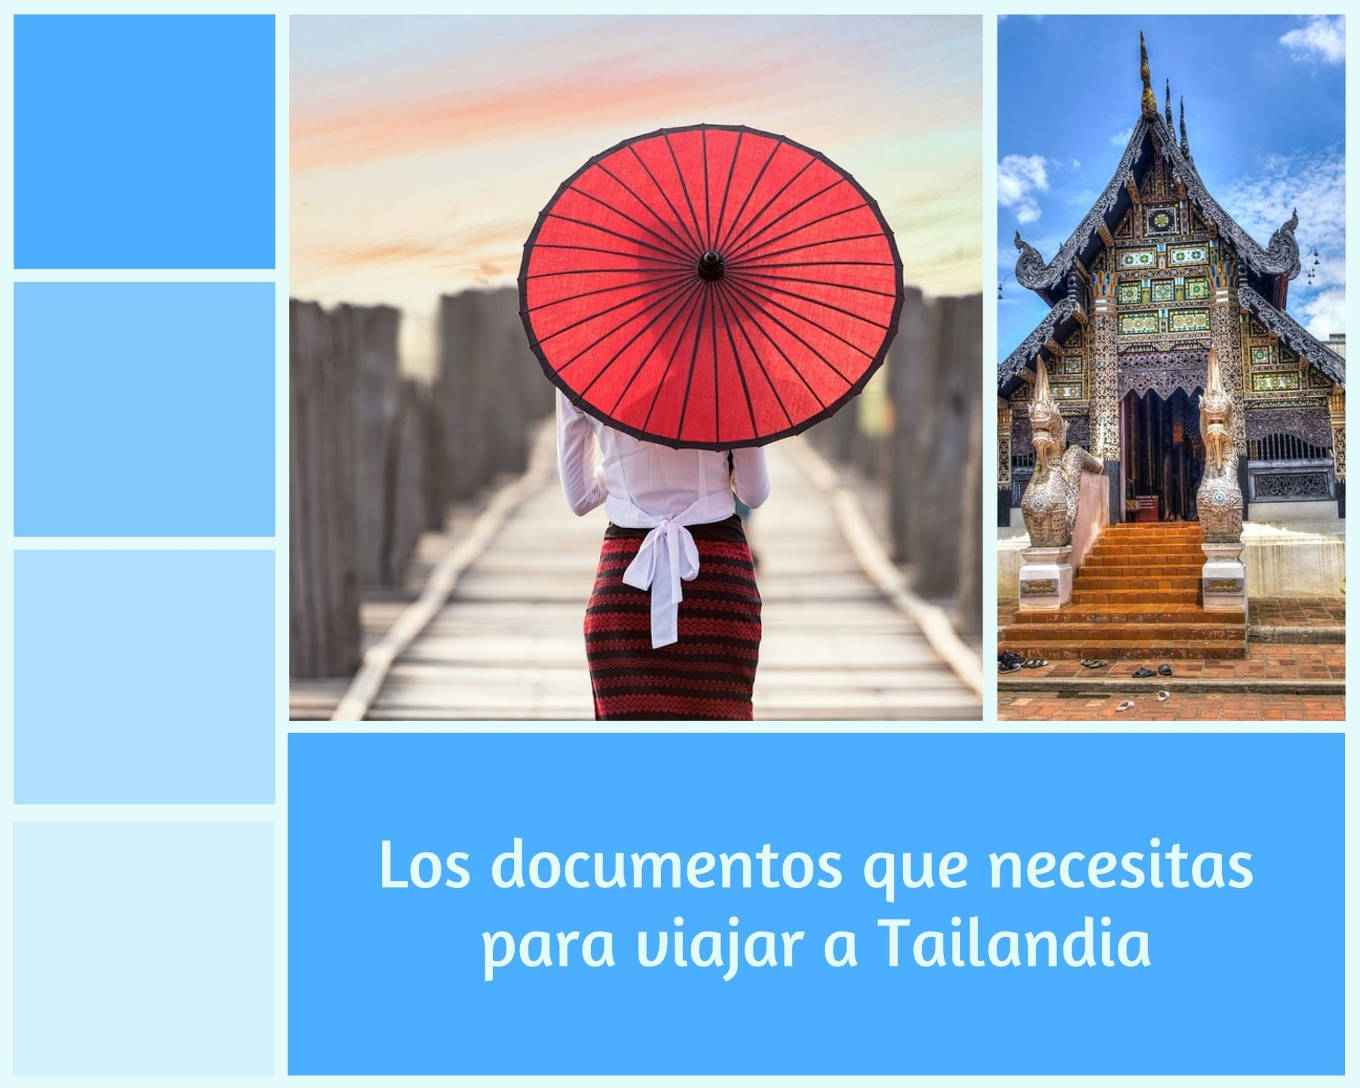 Una chica de espaldas lleva una paraguas tradicional tailandés. A la derecha, un templo. Documentos necesarios de viaje.